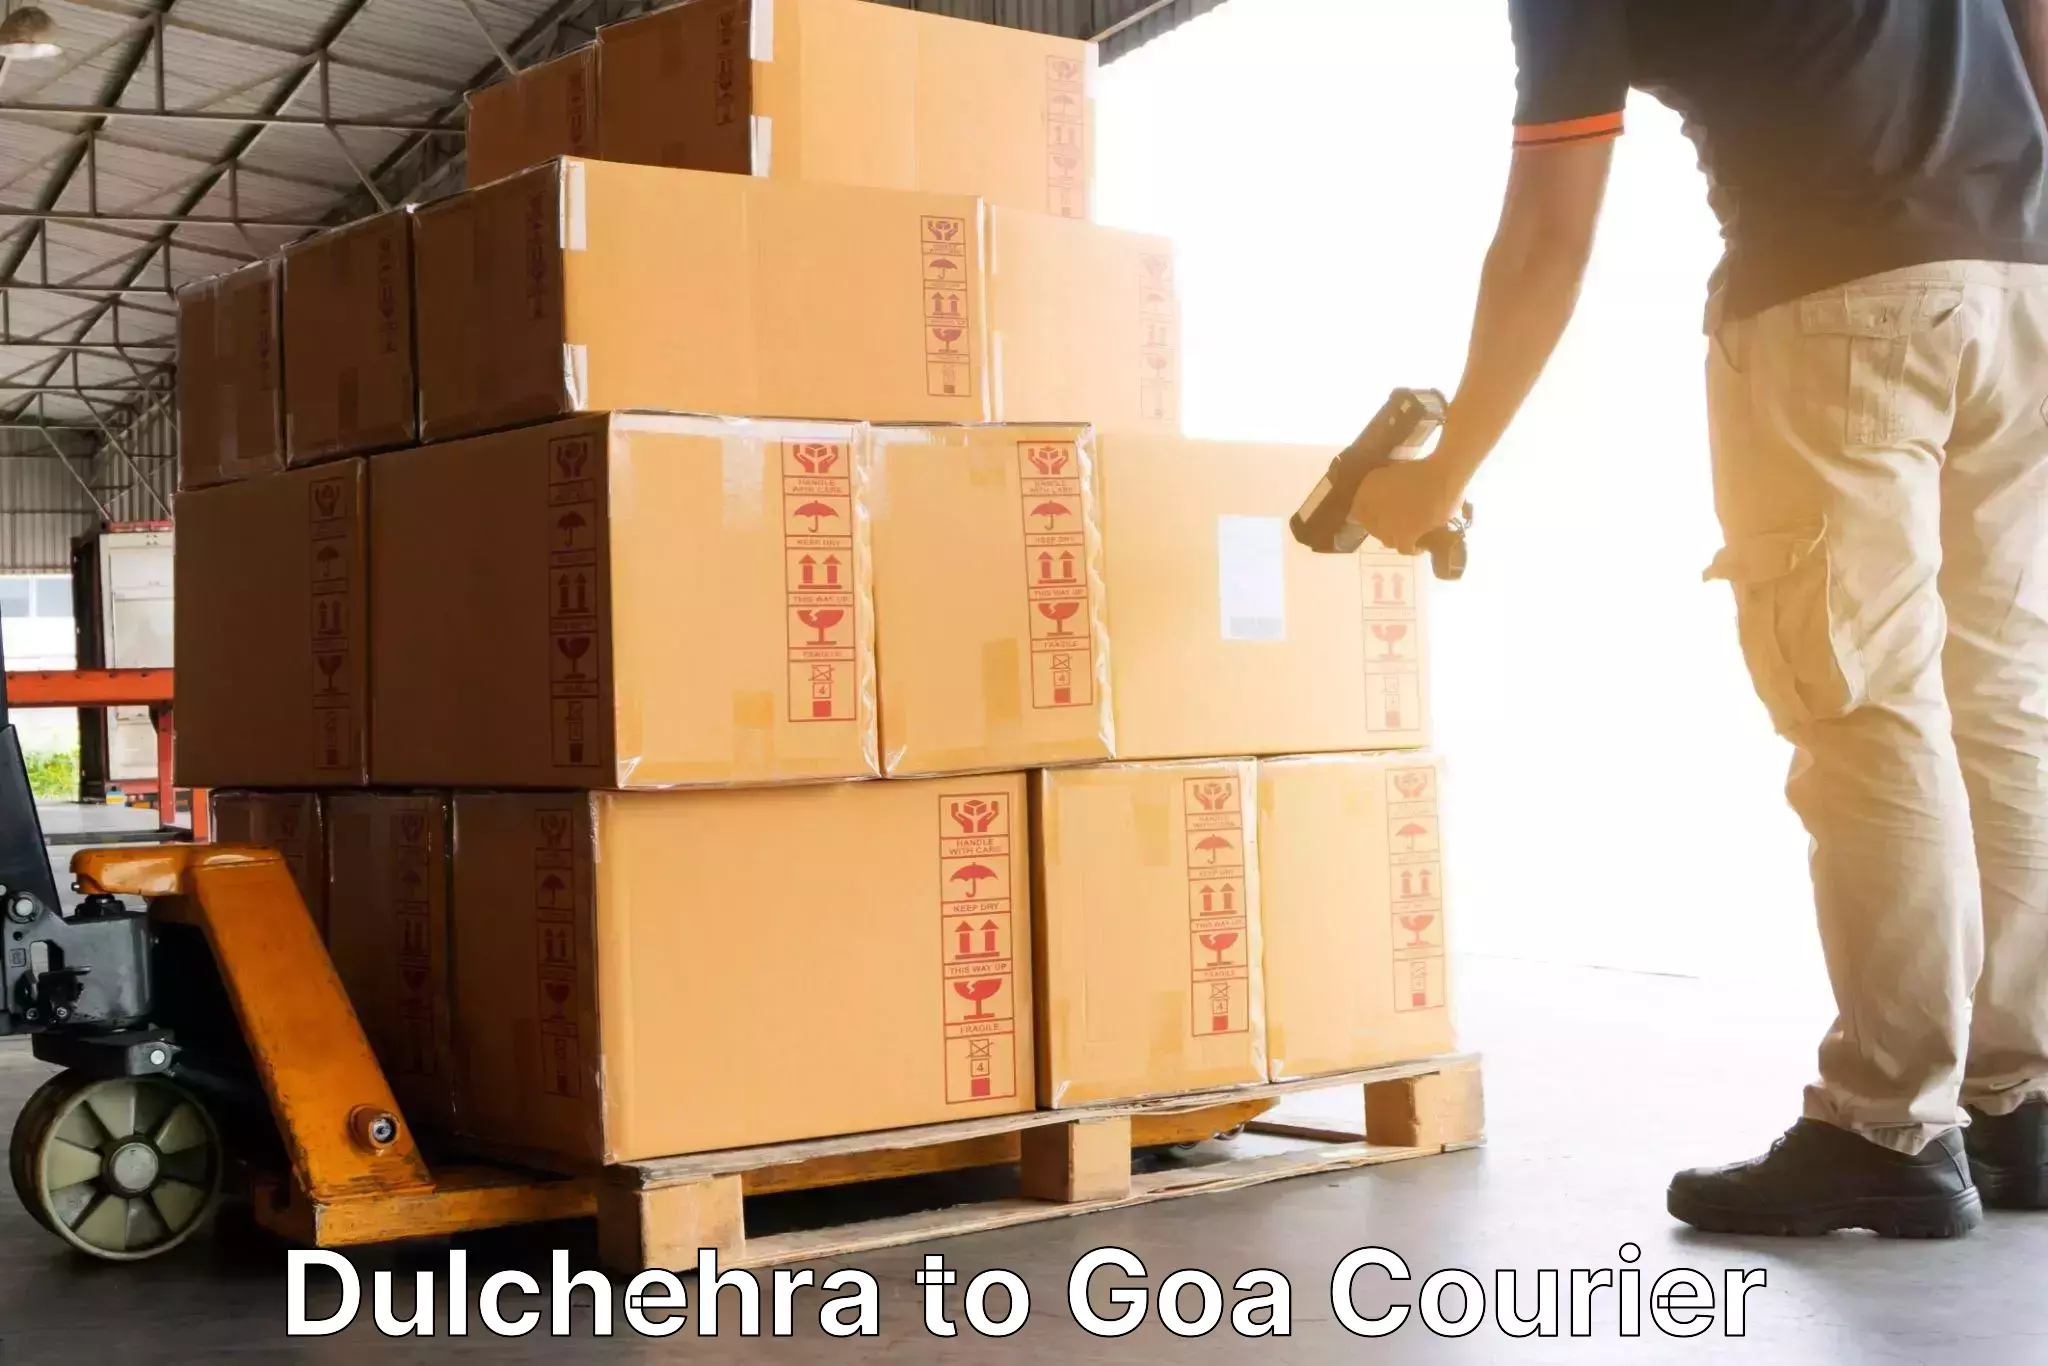 Urgent courier needs Dulchehra to Goa